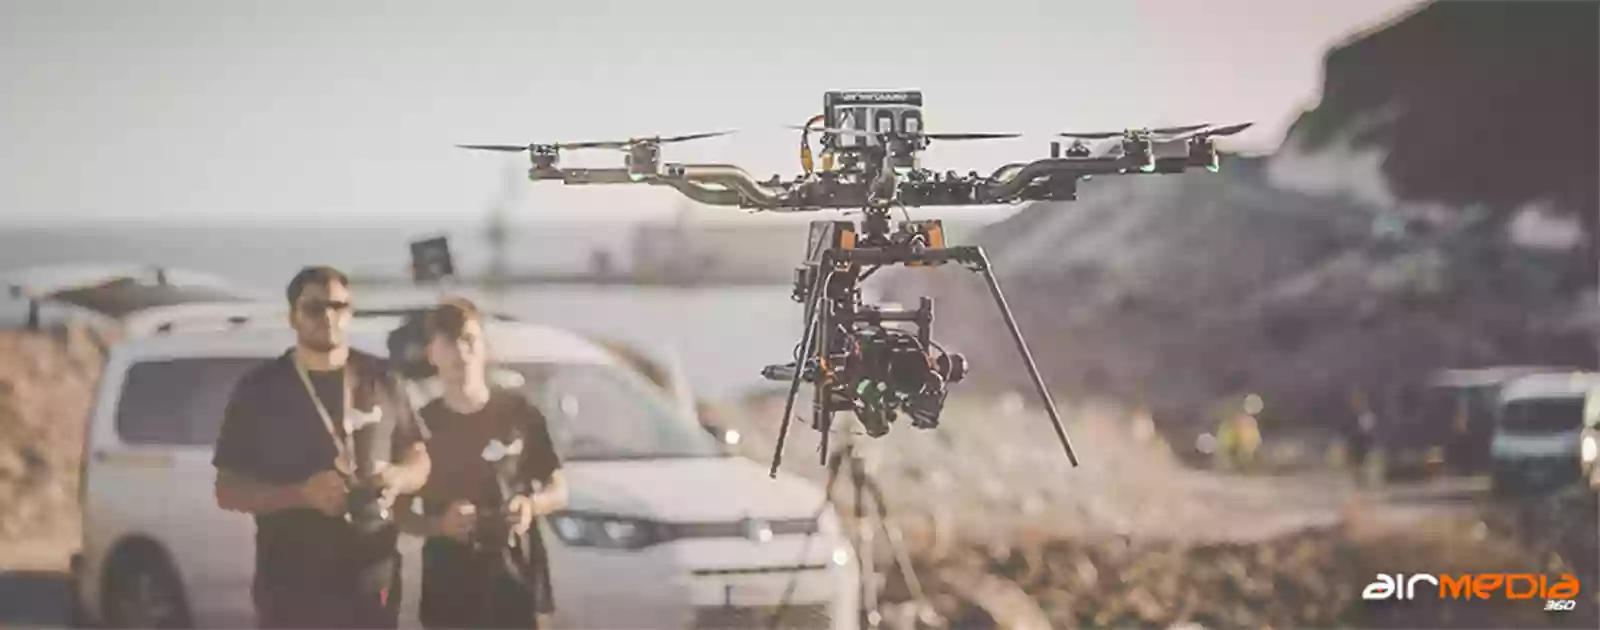 Airmedia360 - Drones profesionales en Madrid para cine, televisión y publicidad